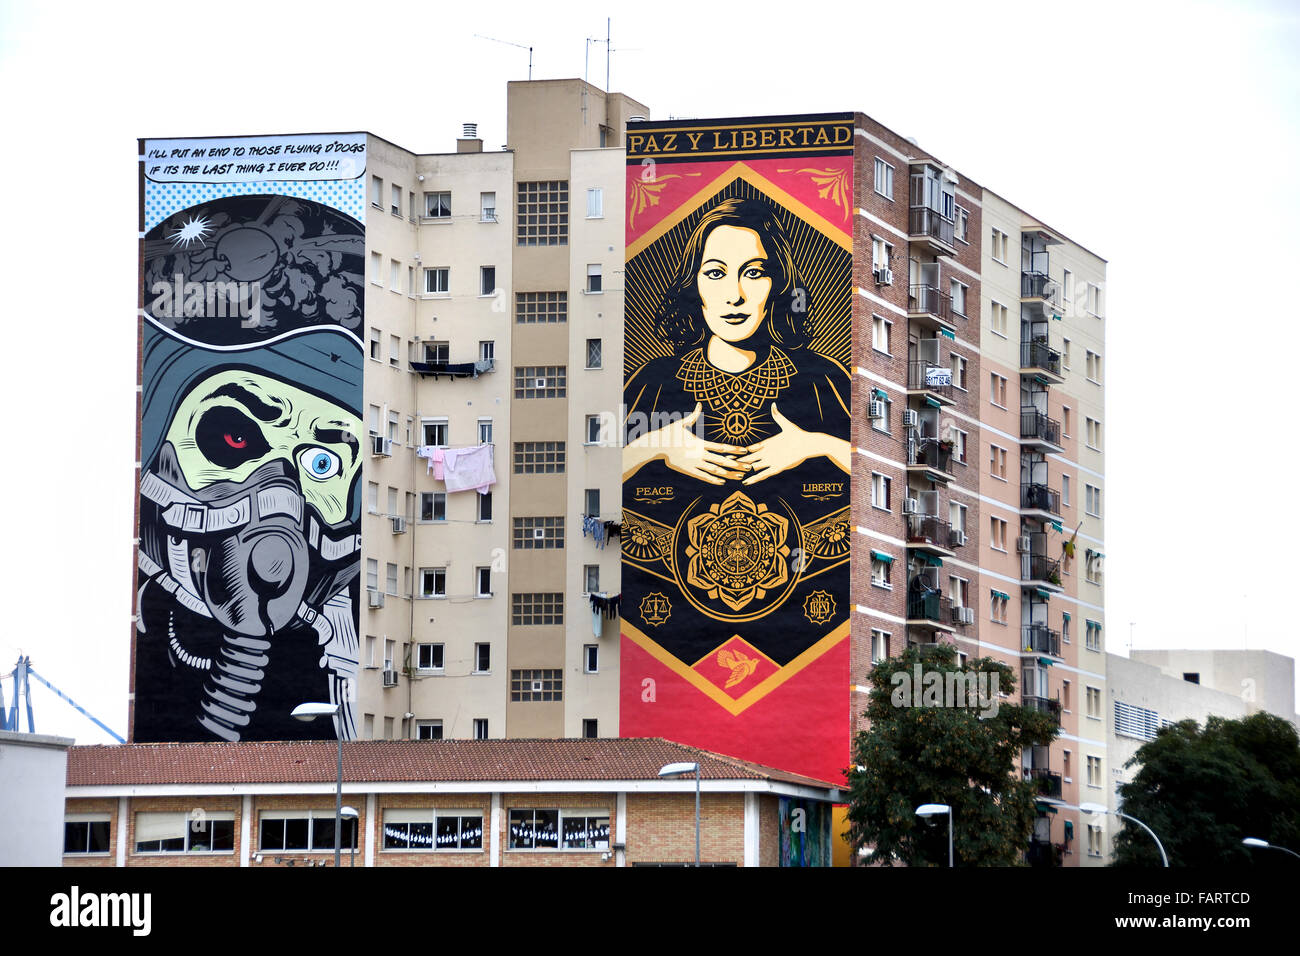 Espagnol Malaga espagne andalousie ( peintures murales de D Face (l) et d'obéir à Shepard Fairey (r) Soho art district ) Banque D'Images